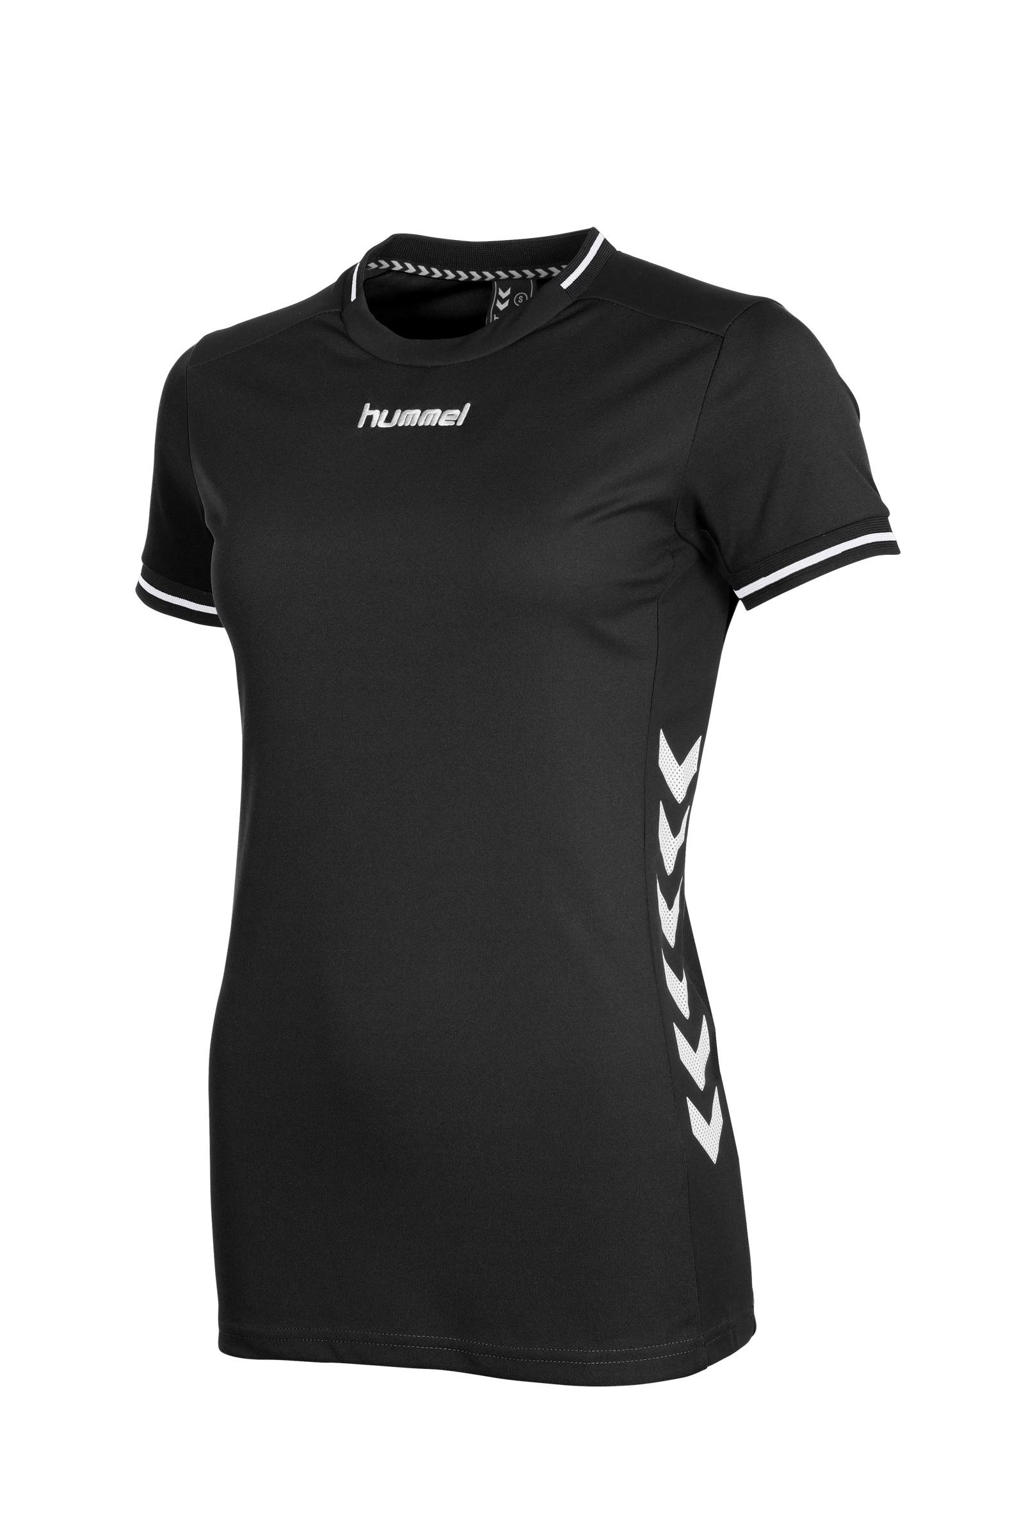 hummel sport T-shirt zwart/wit